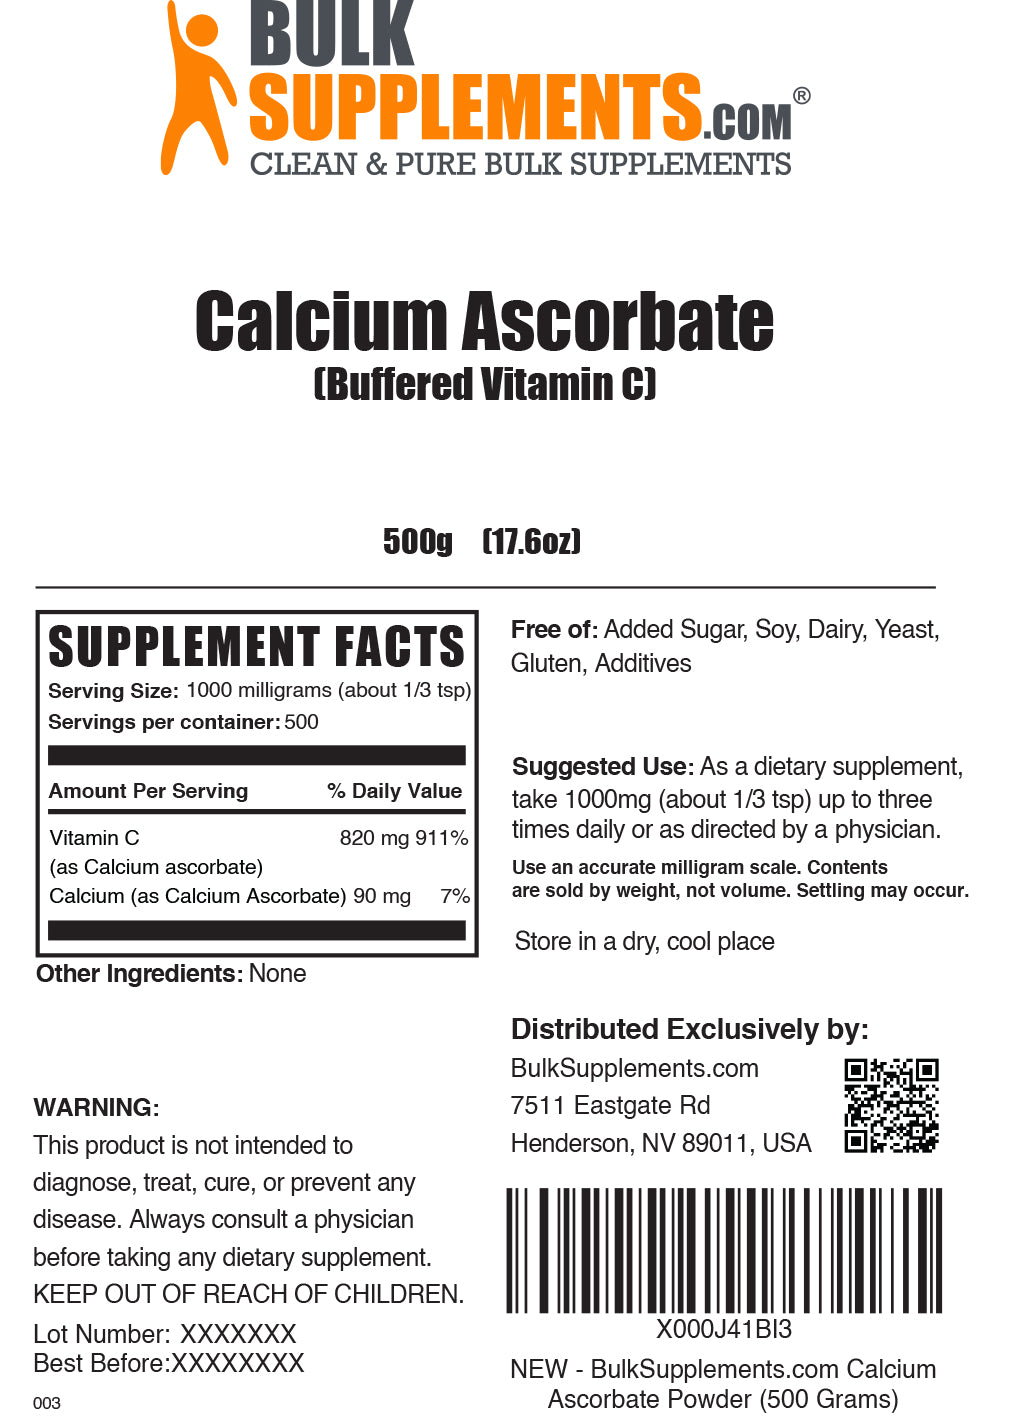 Calcium Ascorbate powder label 500g